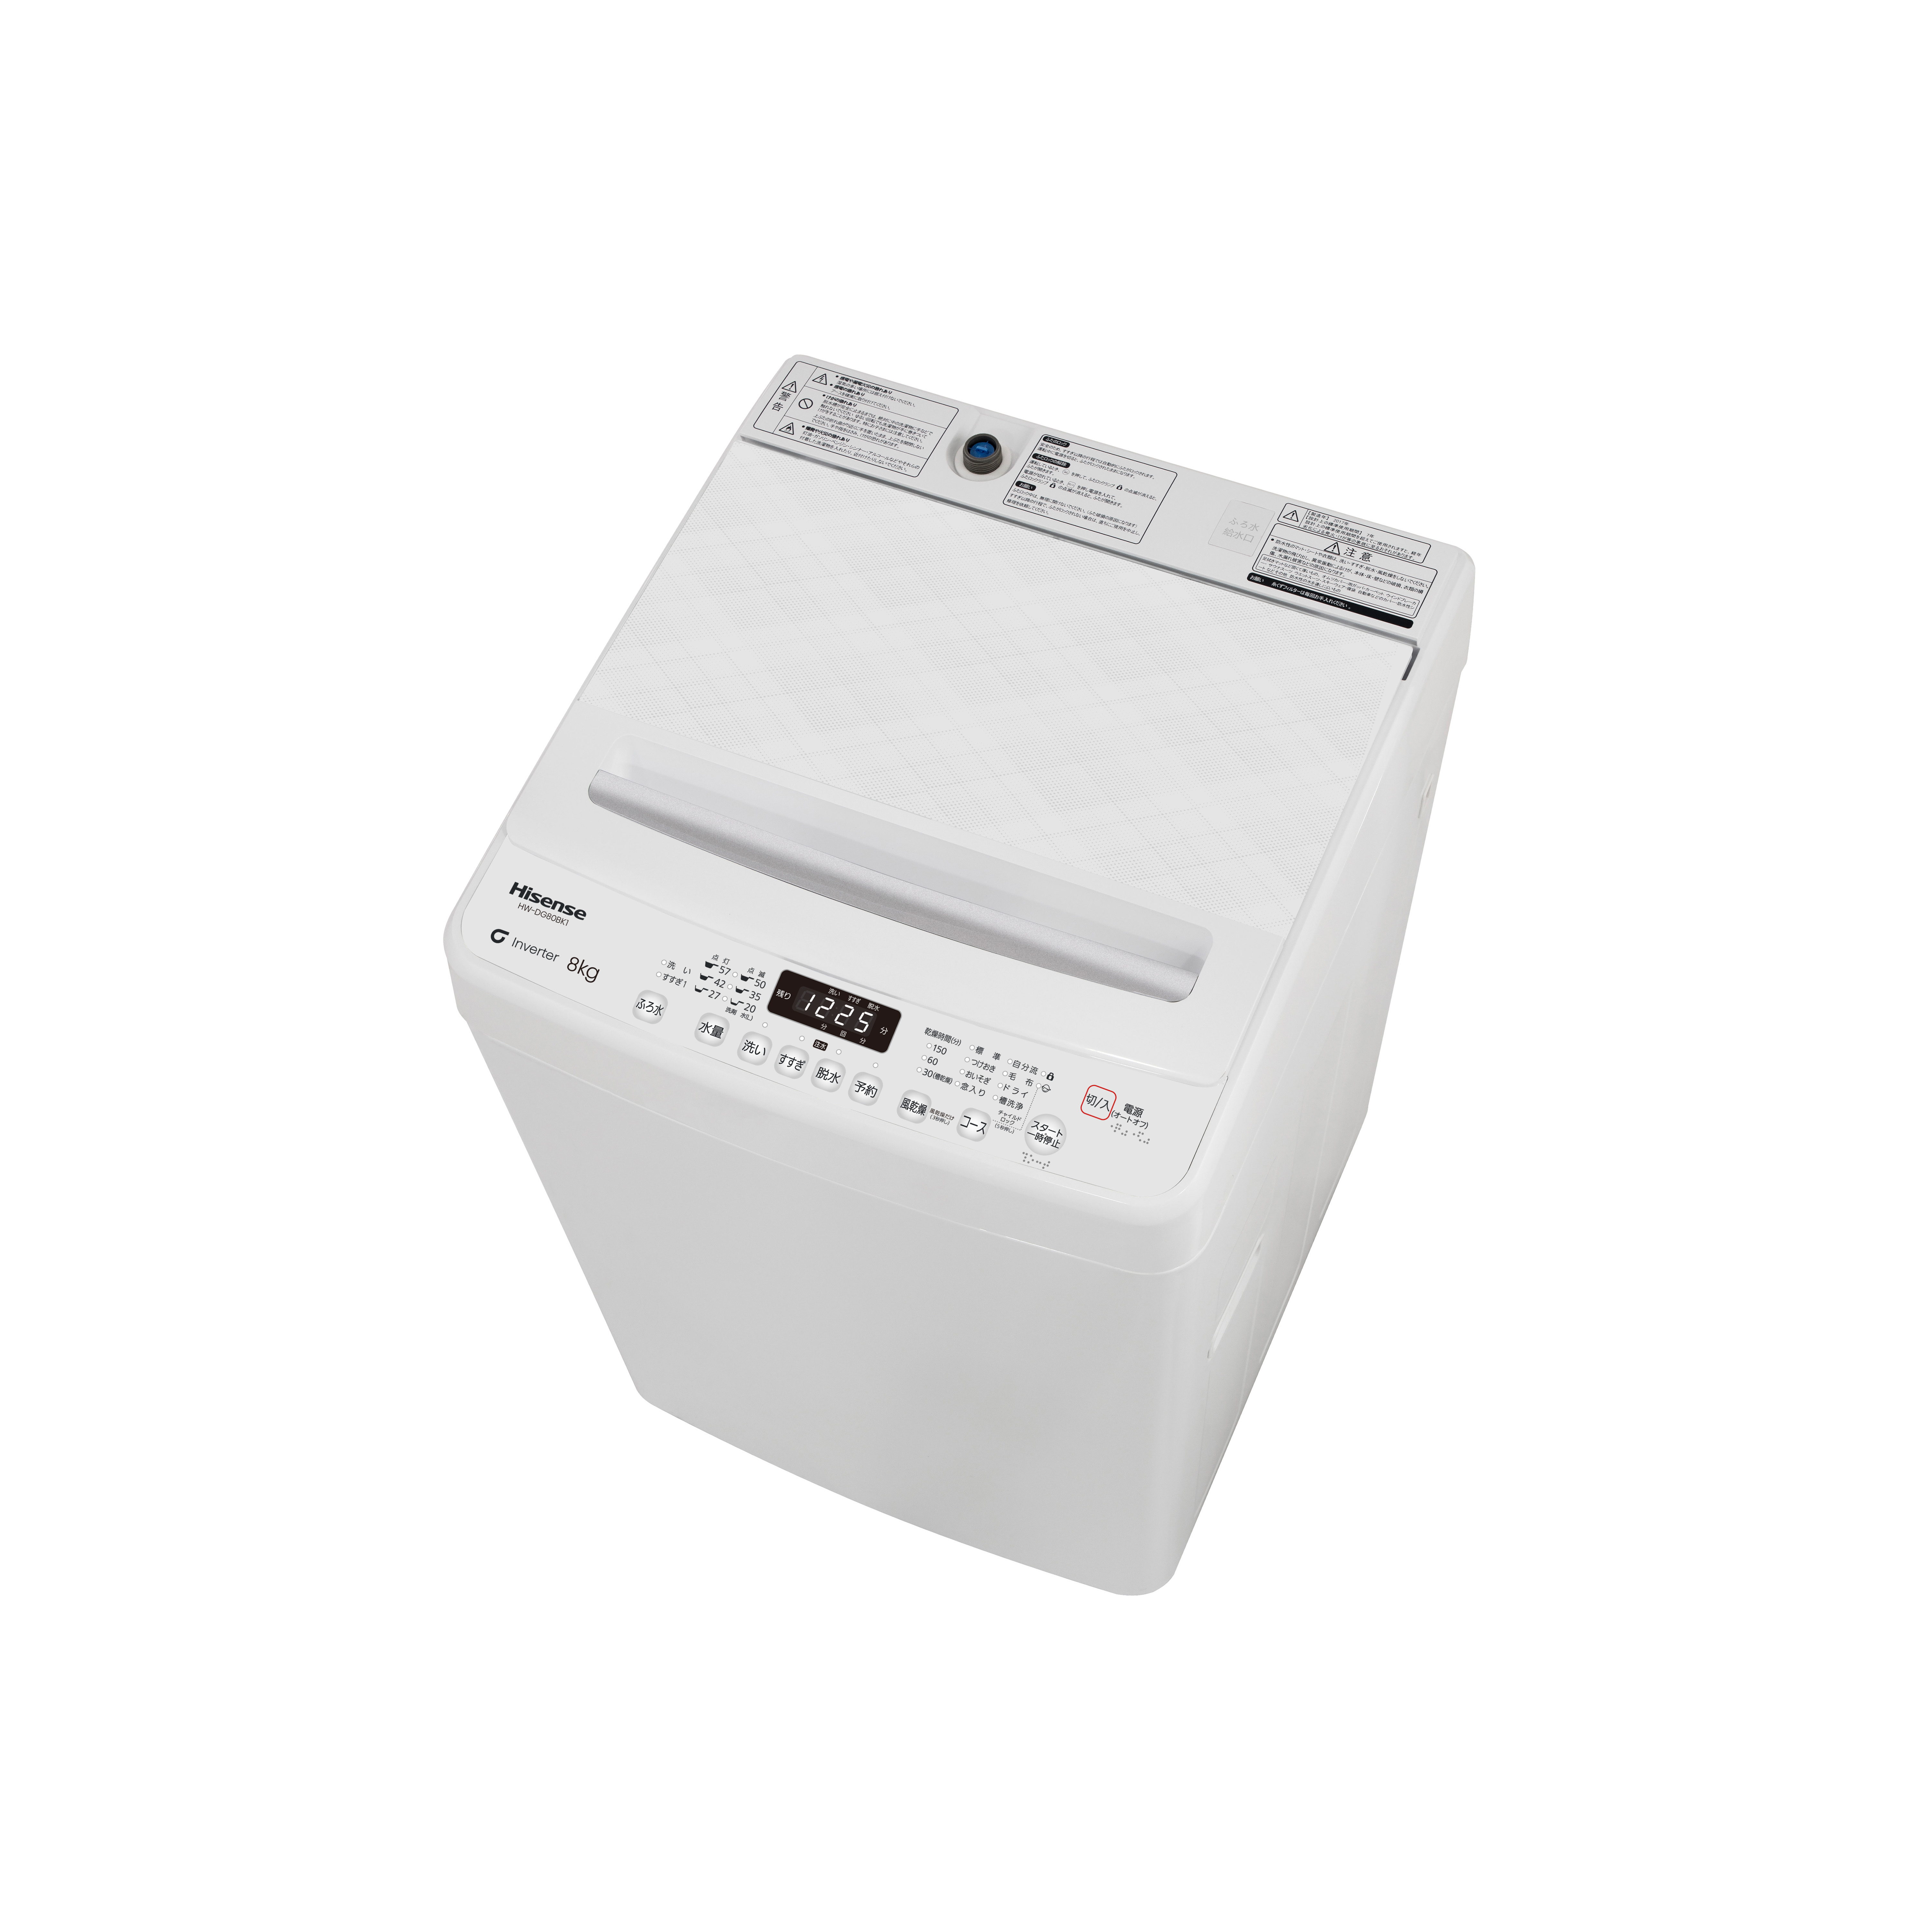 激安！18年製 Hisense 洗濯機 HW-DG75A☆11304